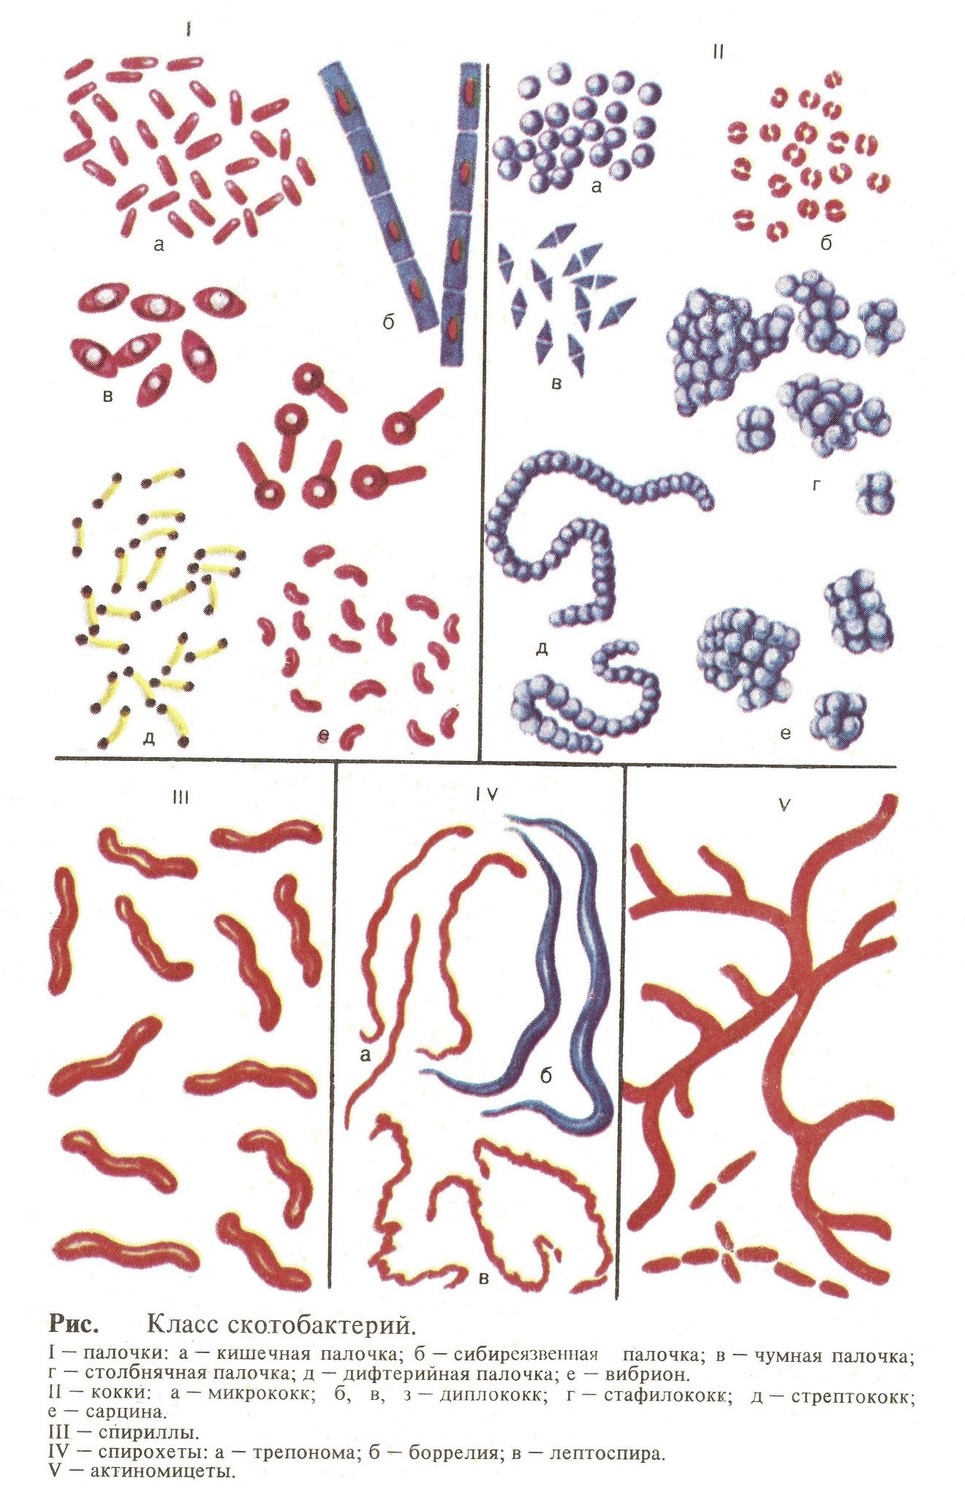 В состав класса Bacteria входят: кокки, палочки, спириллы, спирохеты и актиномицеты